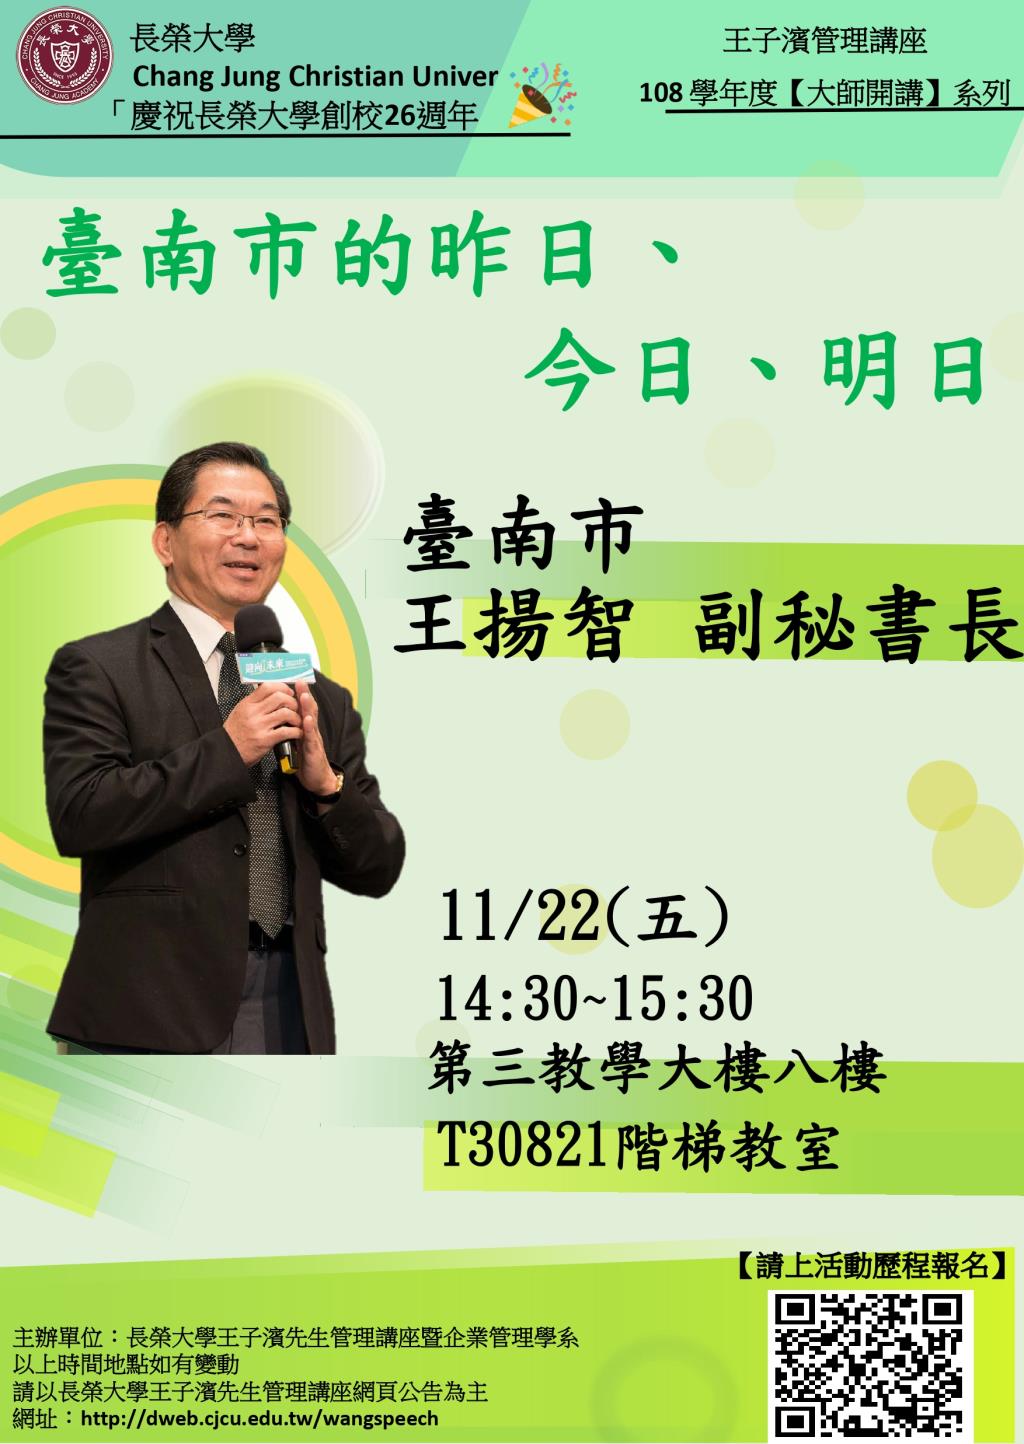 敬邀參加本週五下午(11/22)王子濱先生管理講---台南市 王揚智副秘書長